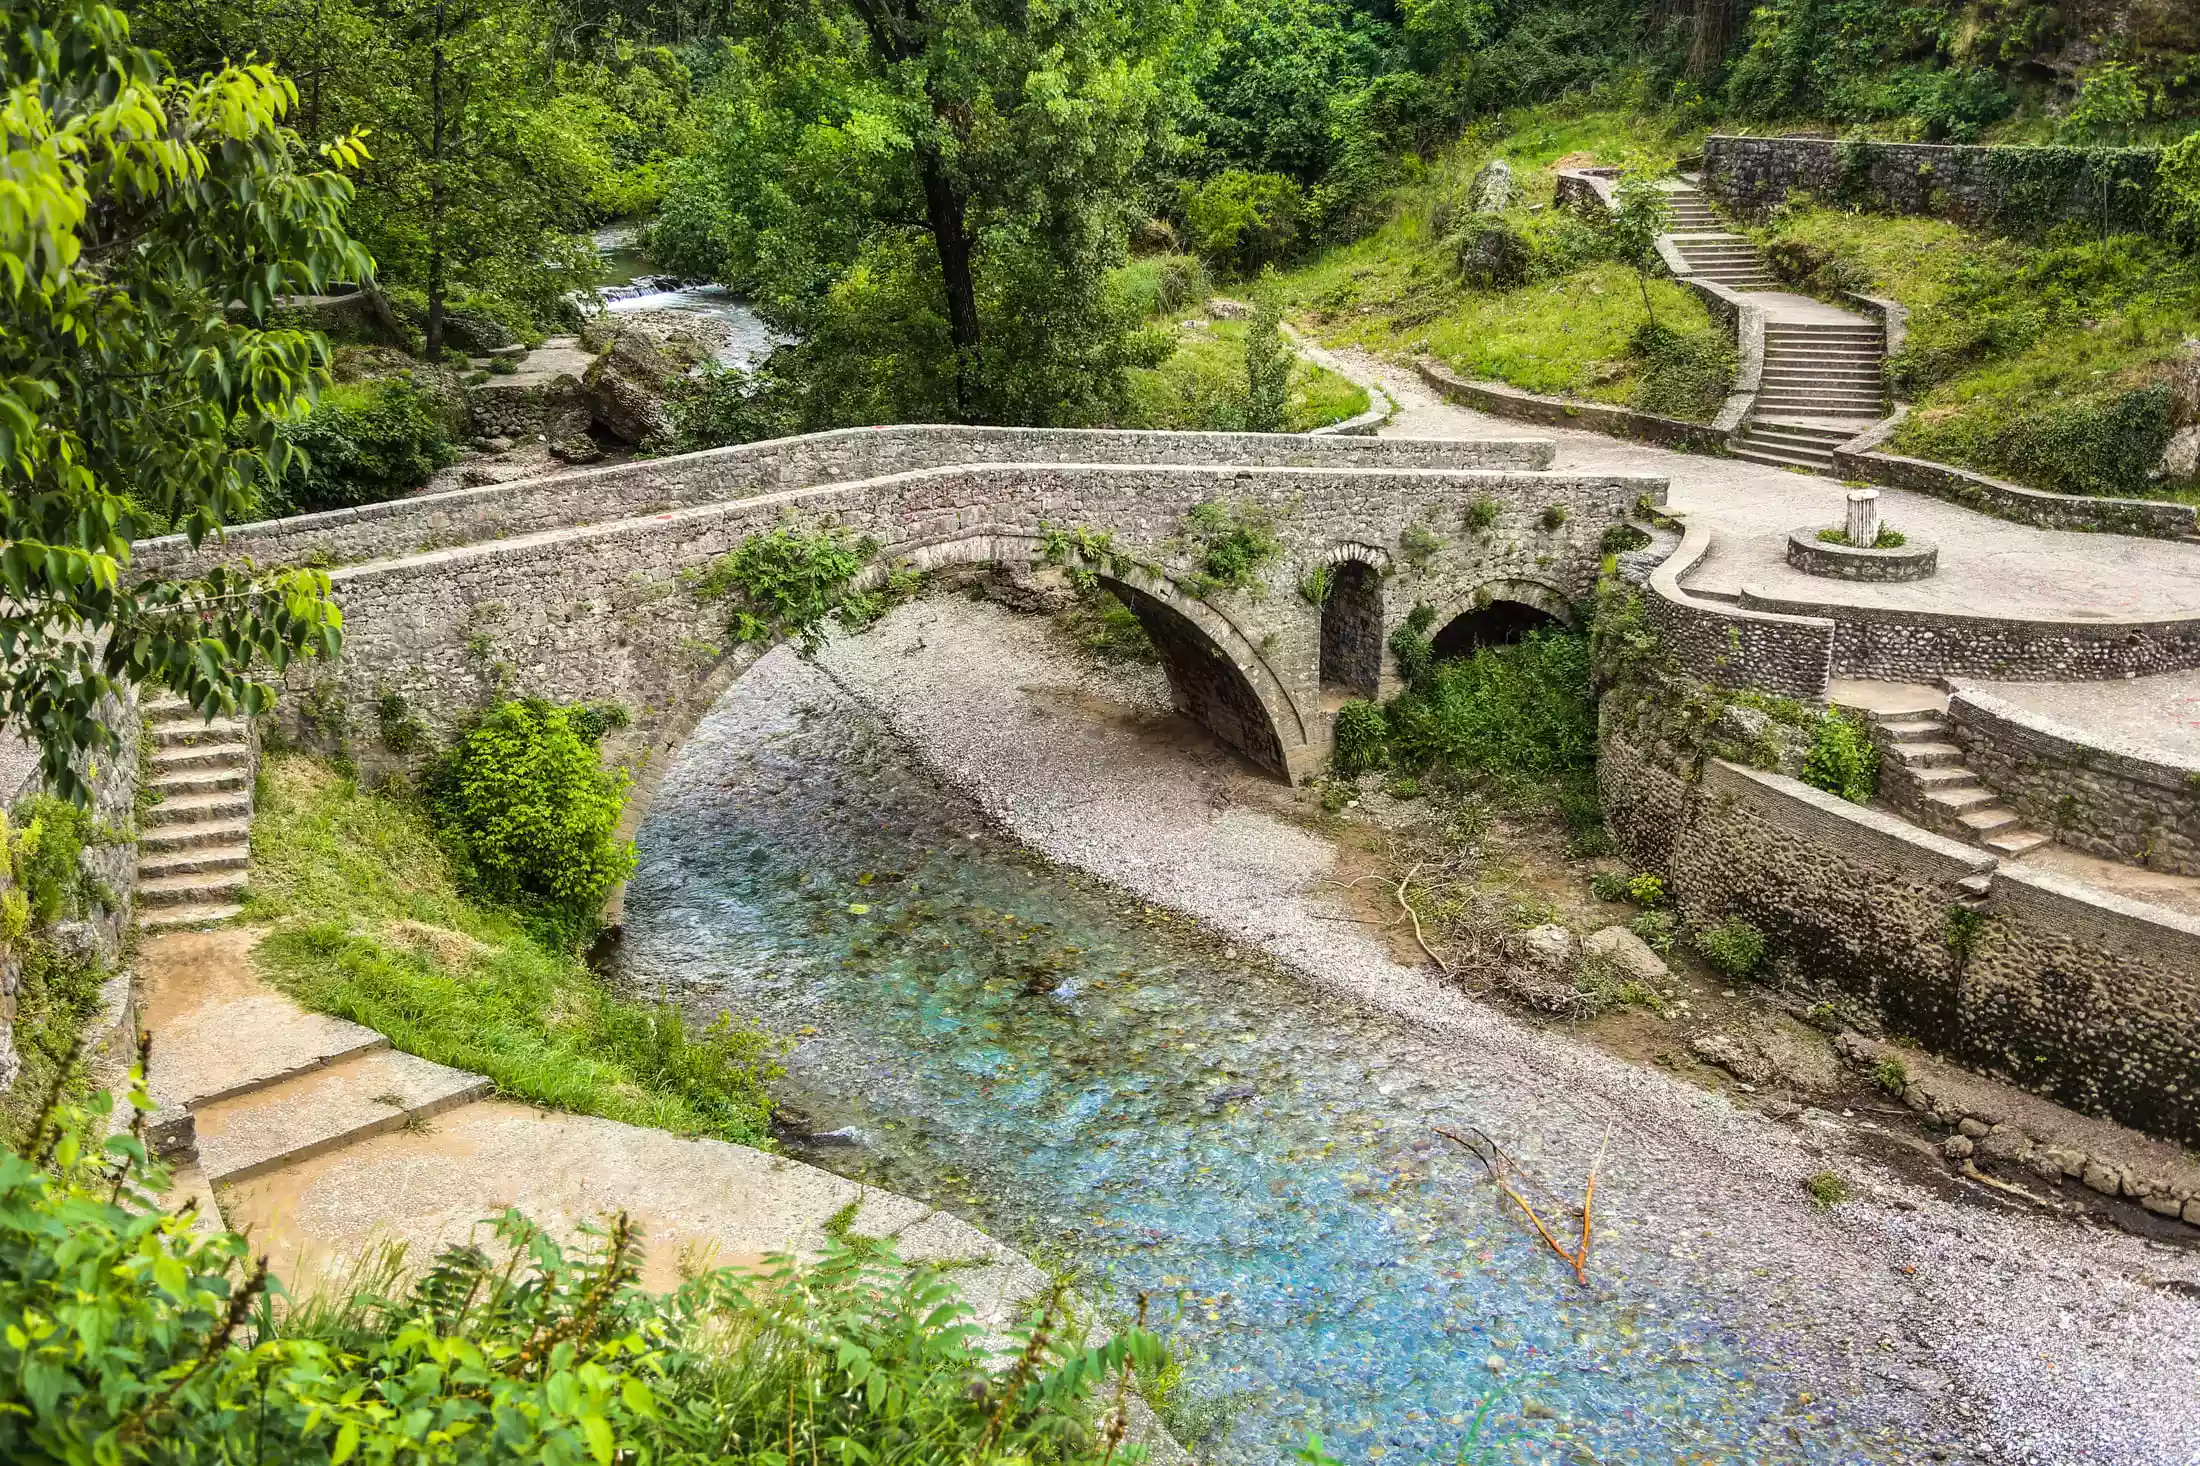 Old Bridge over Ribnica river